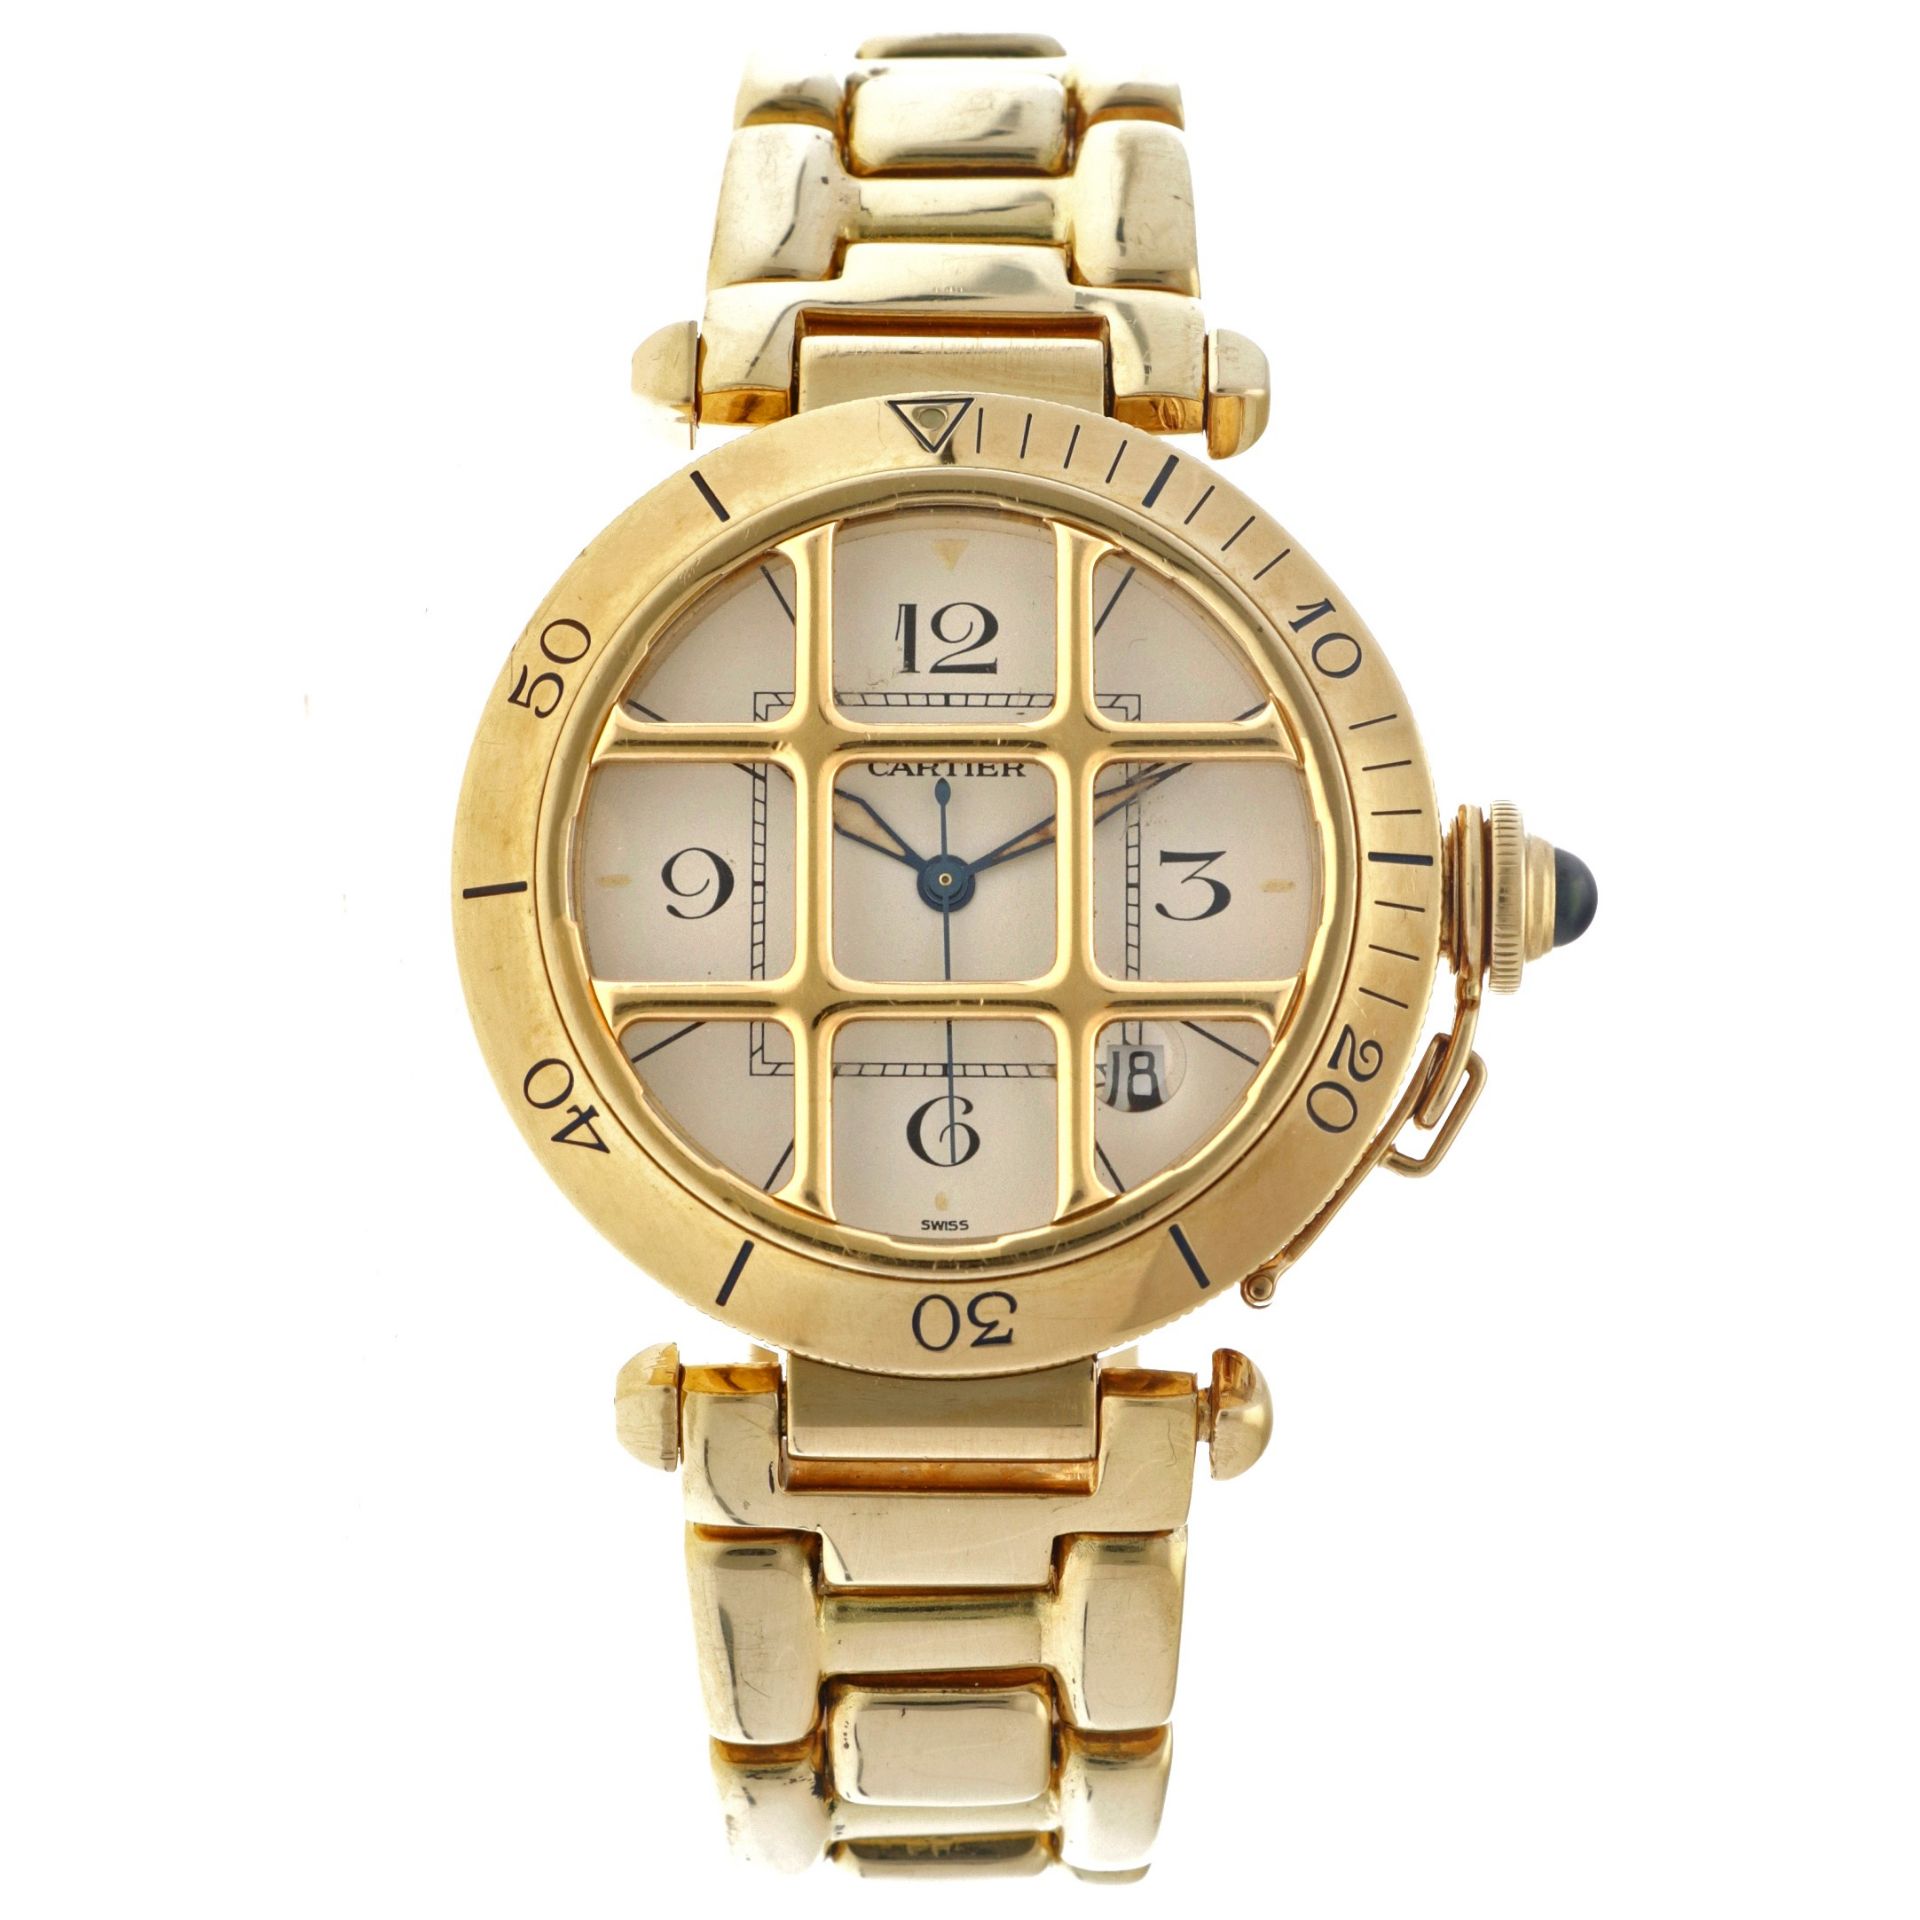 Cartier Pasha 18K. 1021 1 - Men's watch. 